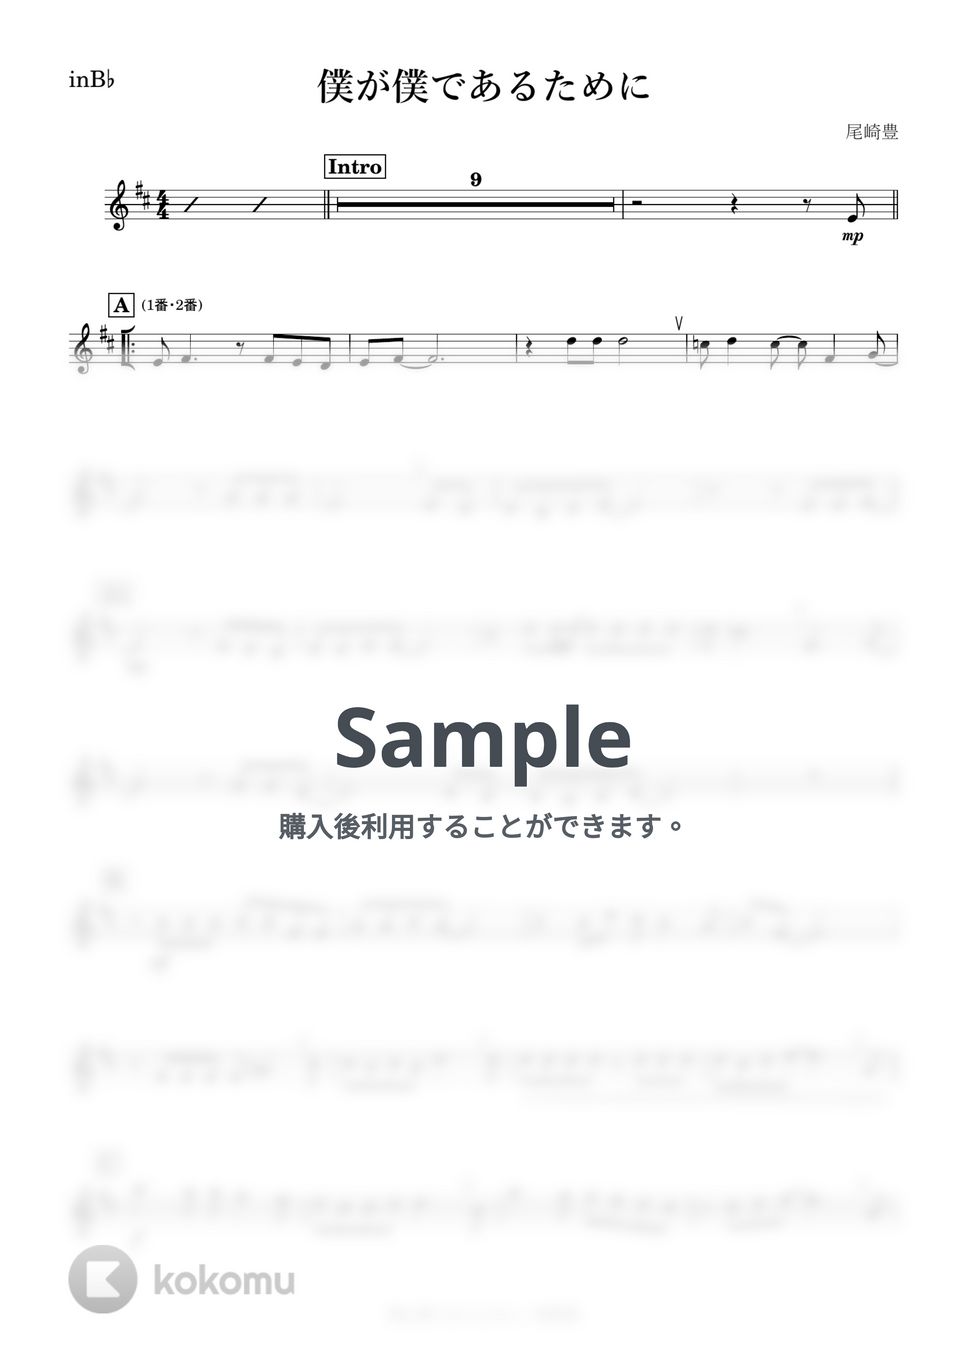 尾崎豊 - 僕が僕であるために (B♭) by kanamusic